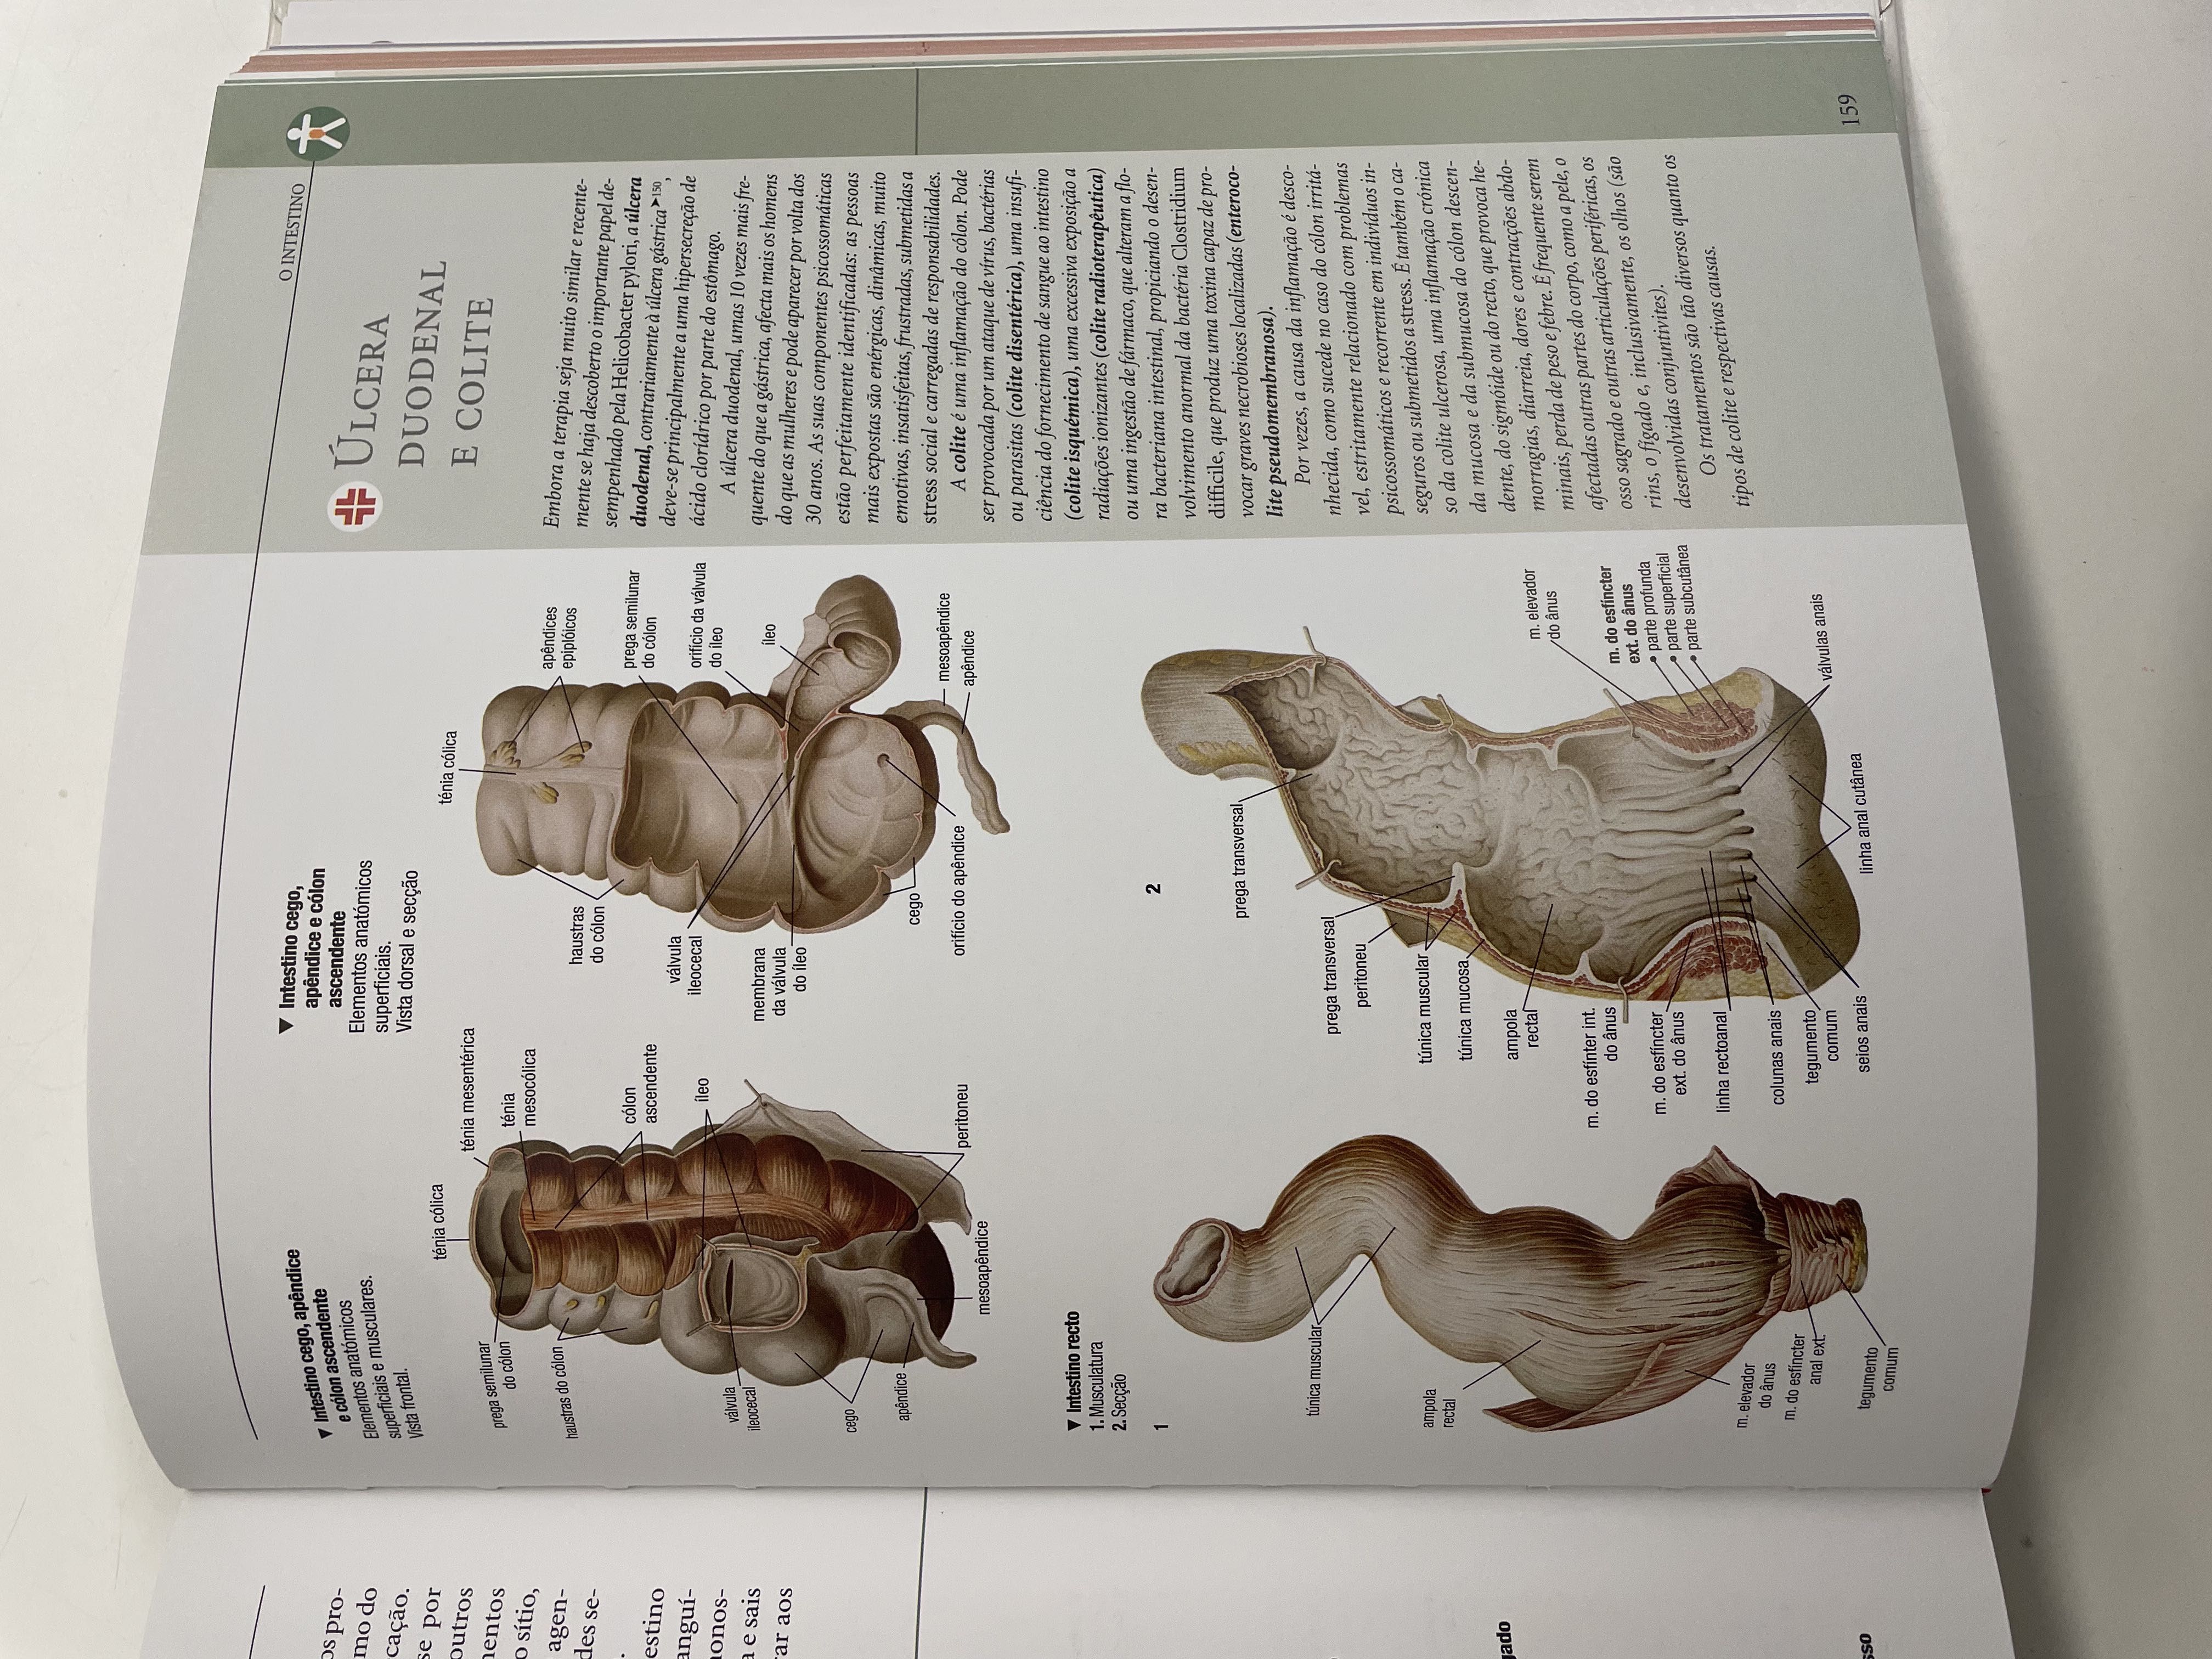 Livro ''Atlas Ilustrativo de Anatomia'' novo e nunca utilizado